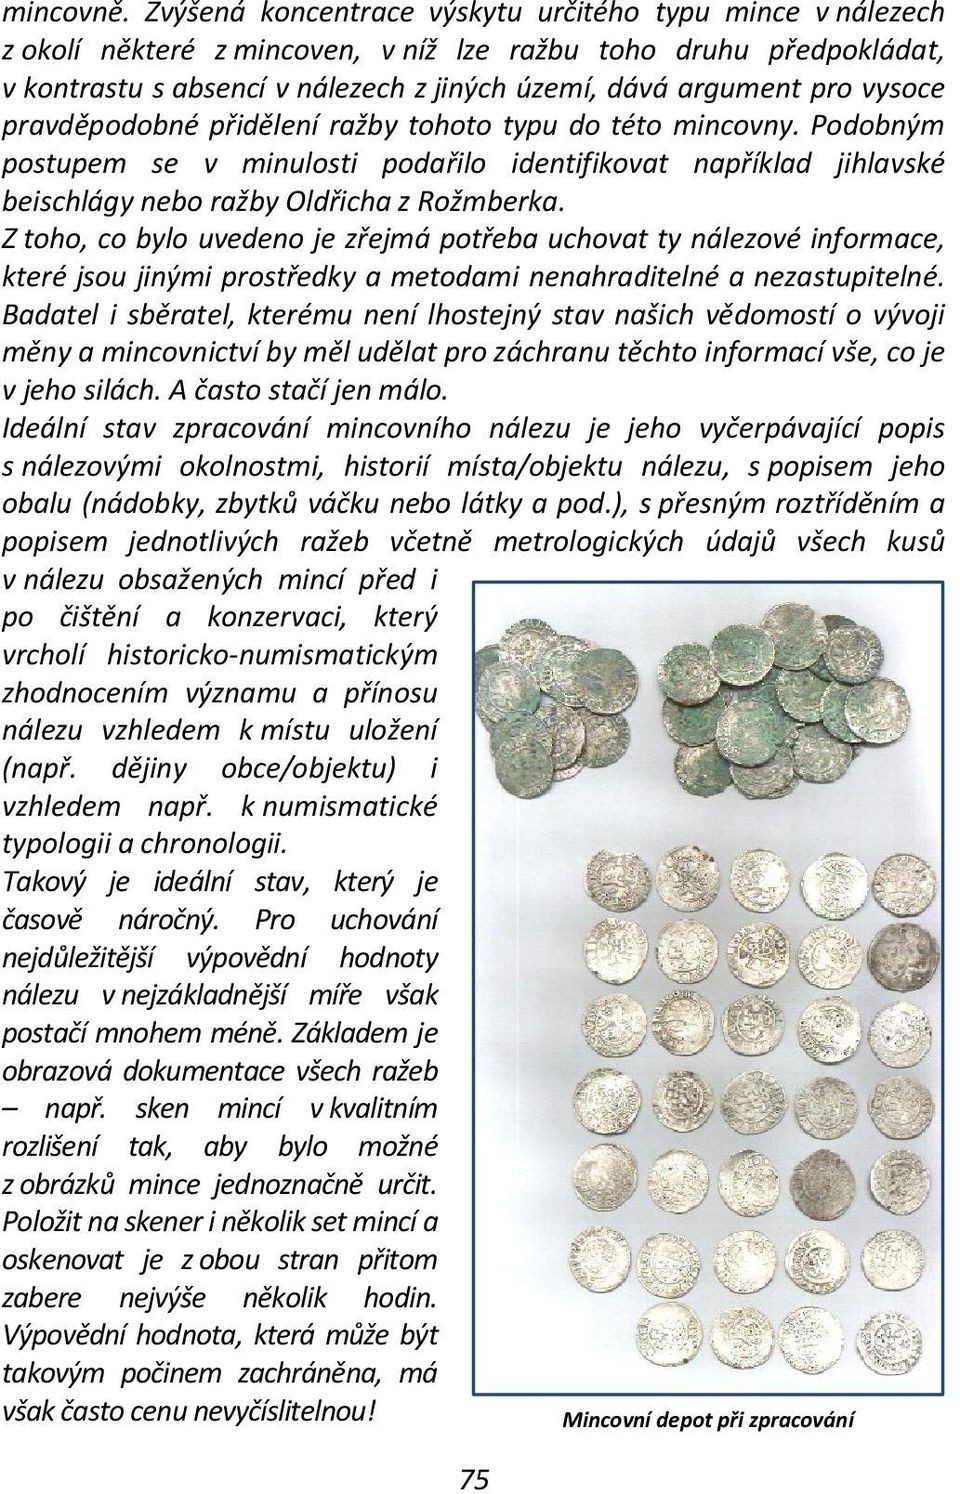 vysoce pravděpodobné přidělení ražby tohoto typu do této mincovny. Podobným postupem se v minulosti podařilo identifikovat například jihlavské beischlágy nebo ražby Oldřicha z Rožmberka.